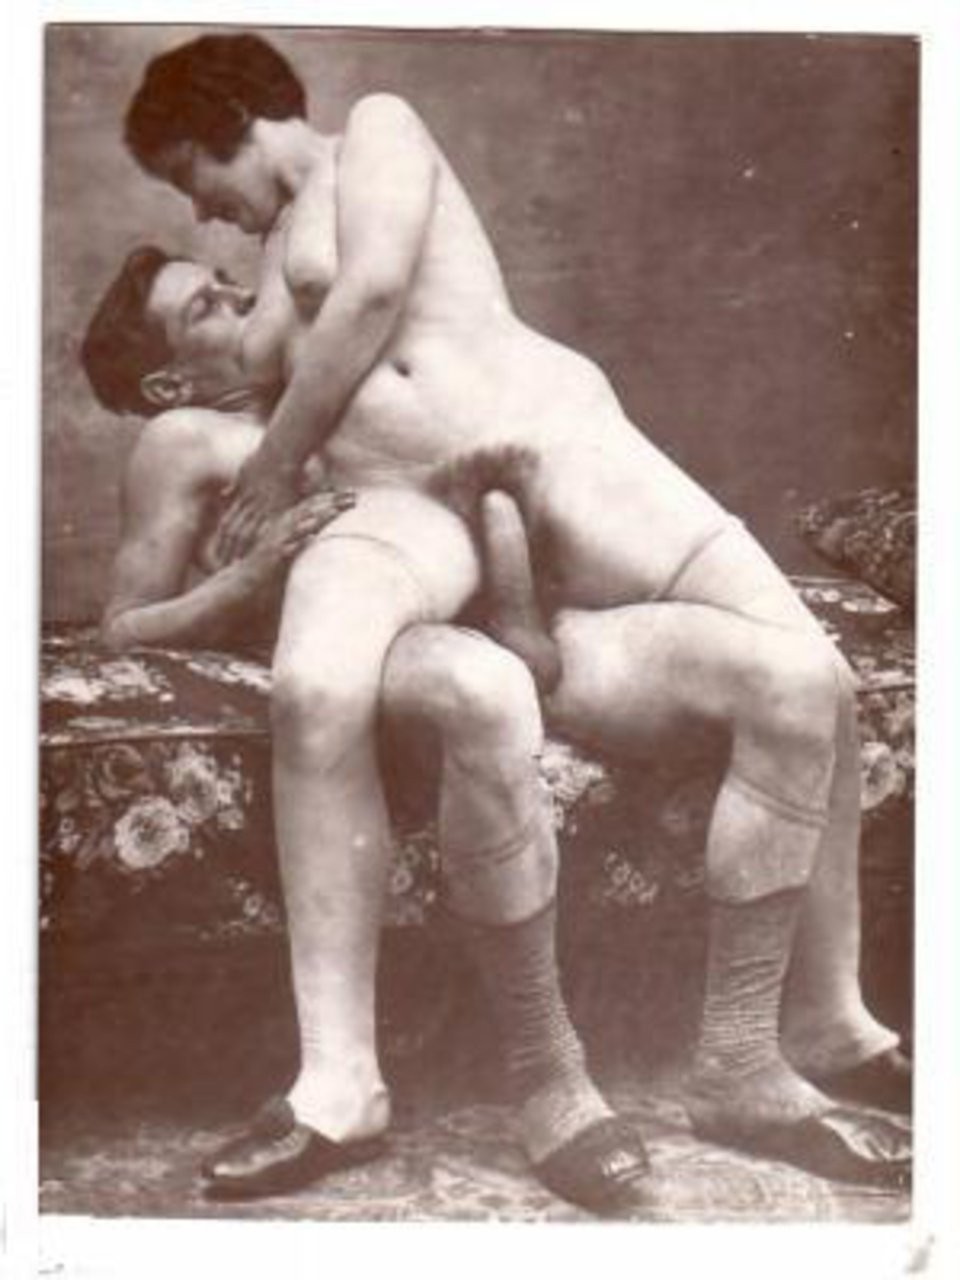 craiglist tampa massage erotic – Erotic